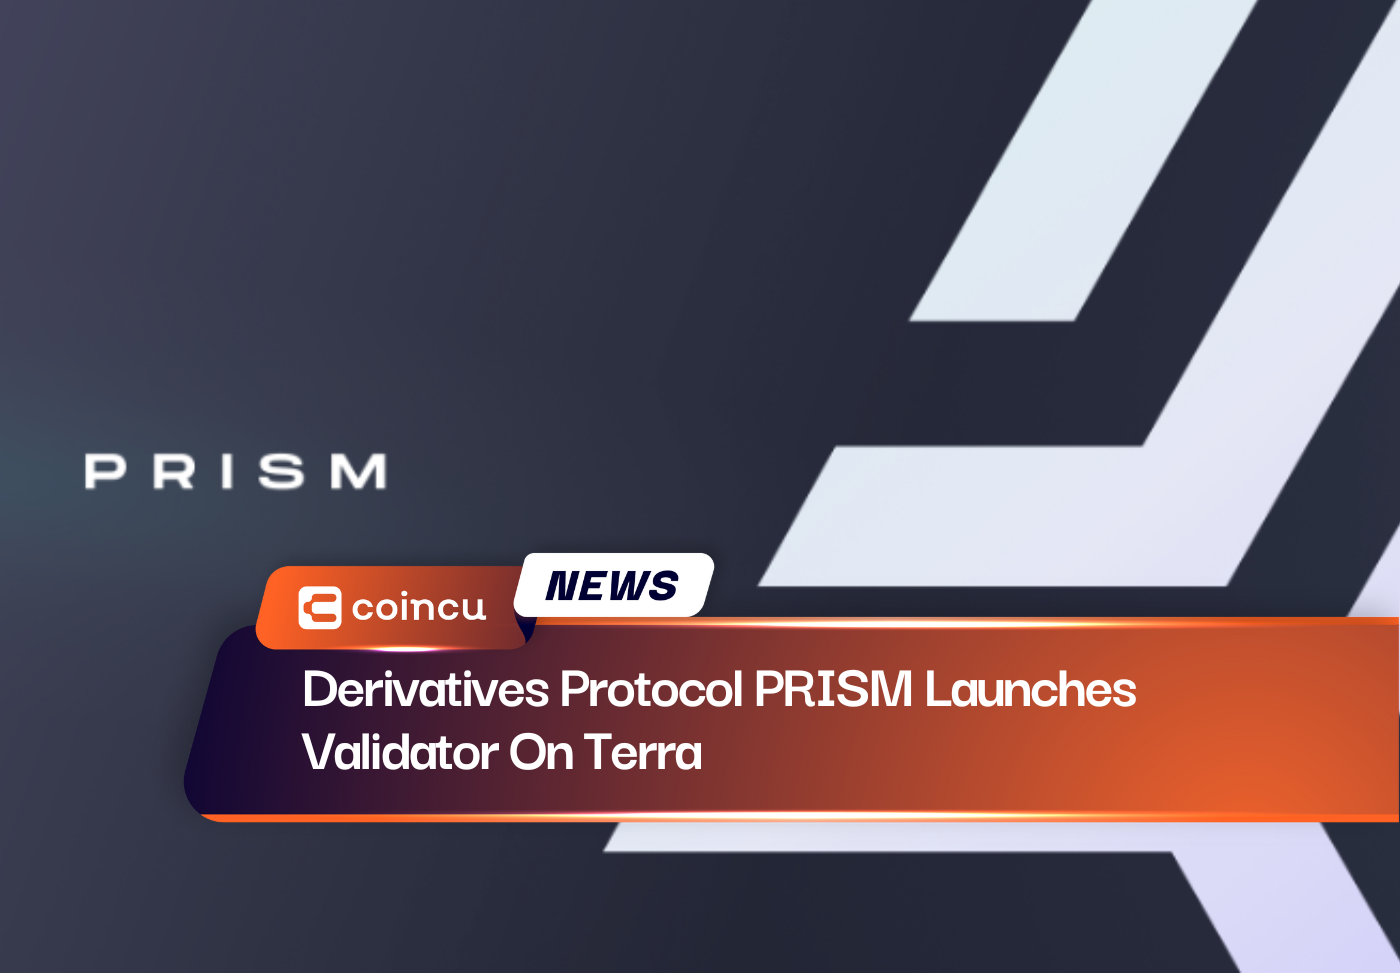 デリバティブ プロトコル PRISM が Validator On Terra を開始